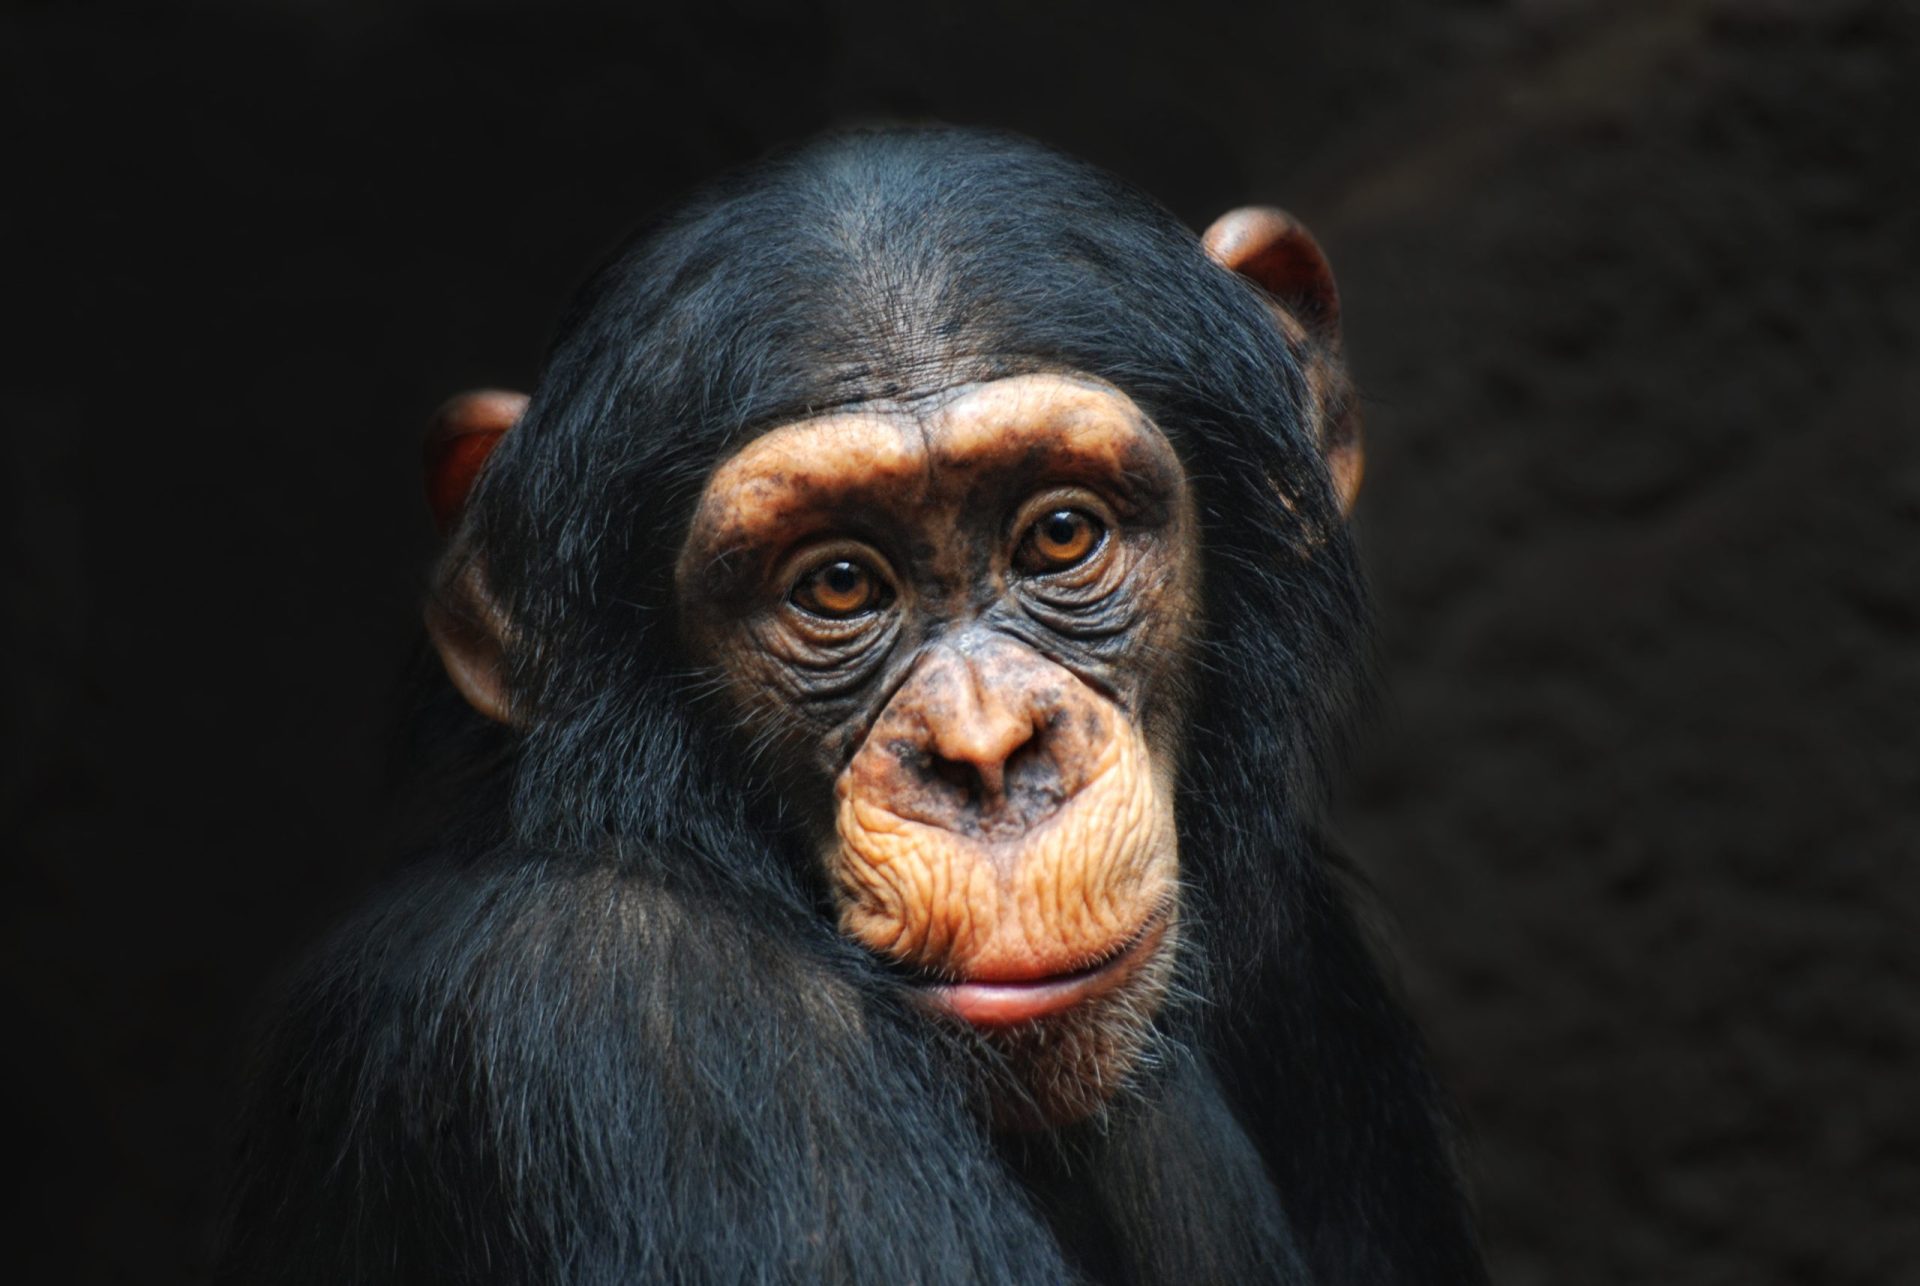 EUA: Concedido Habeas Corpus a dois chimpanzés